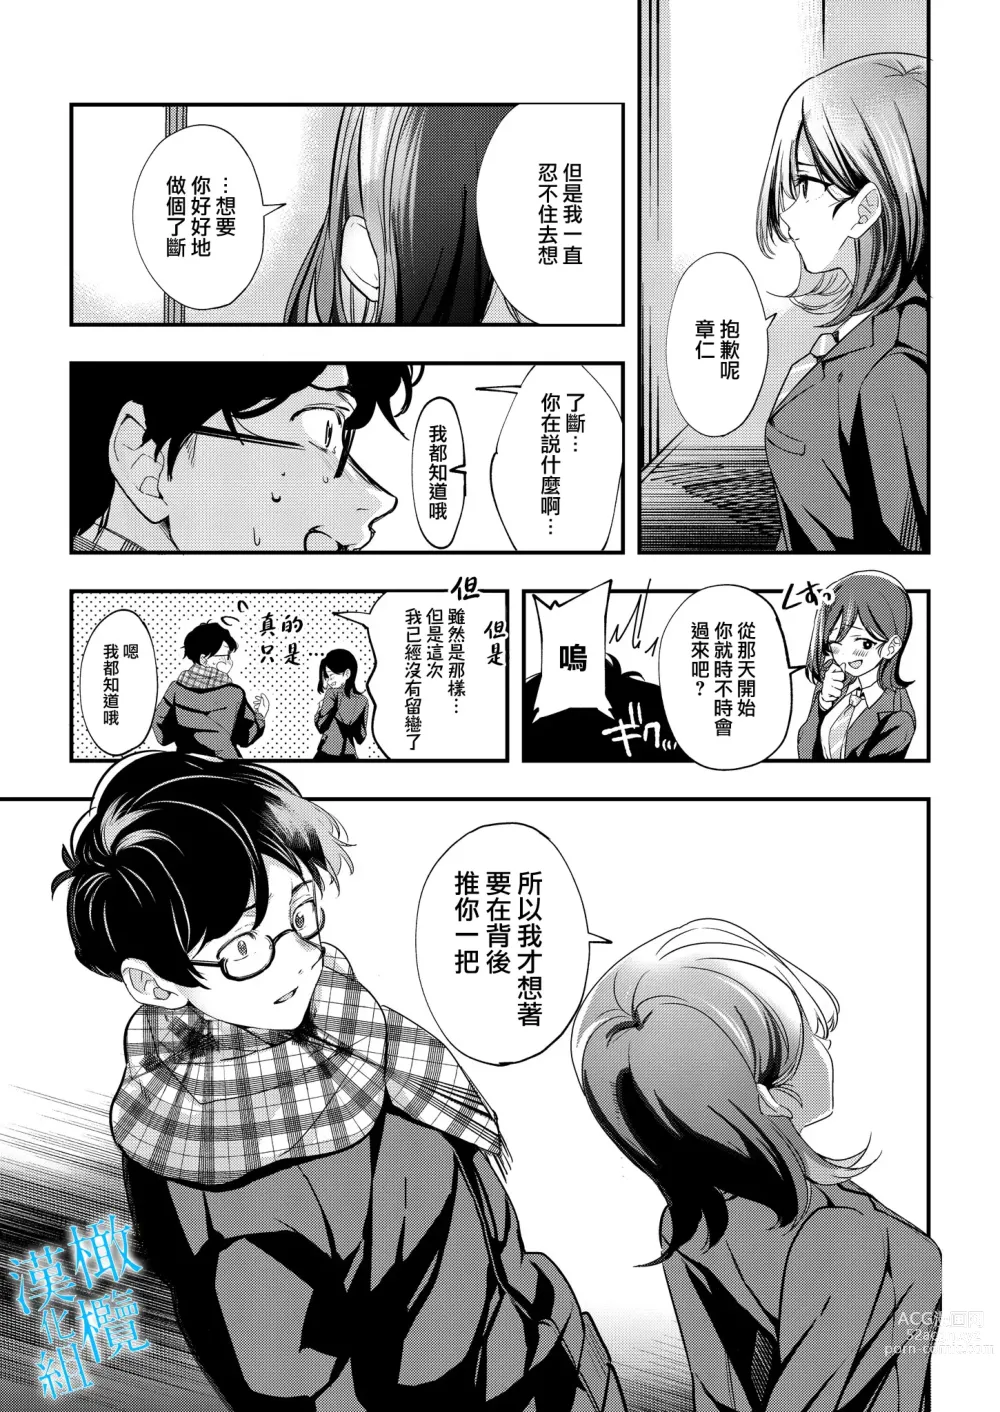 Page 65 of doujinshi 于夜晚绽放的青空